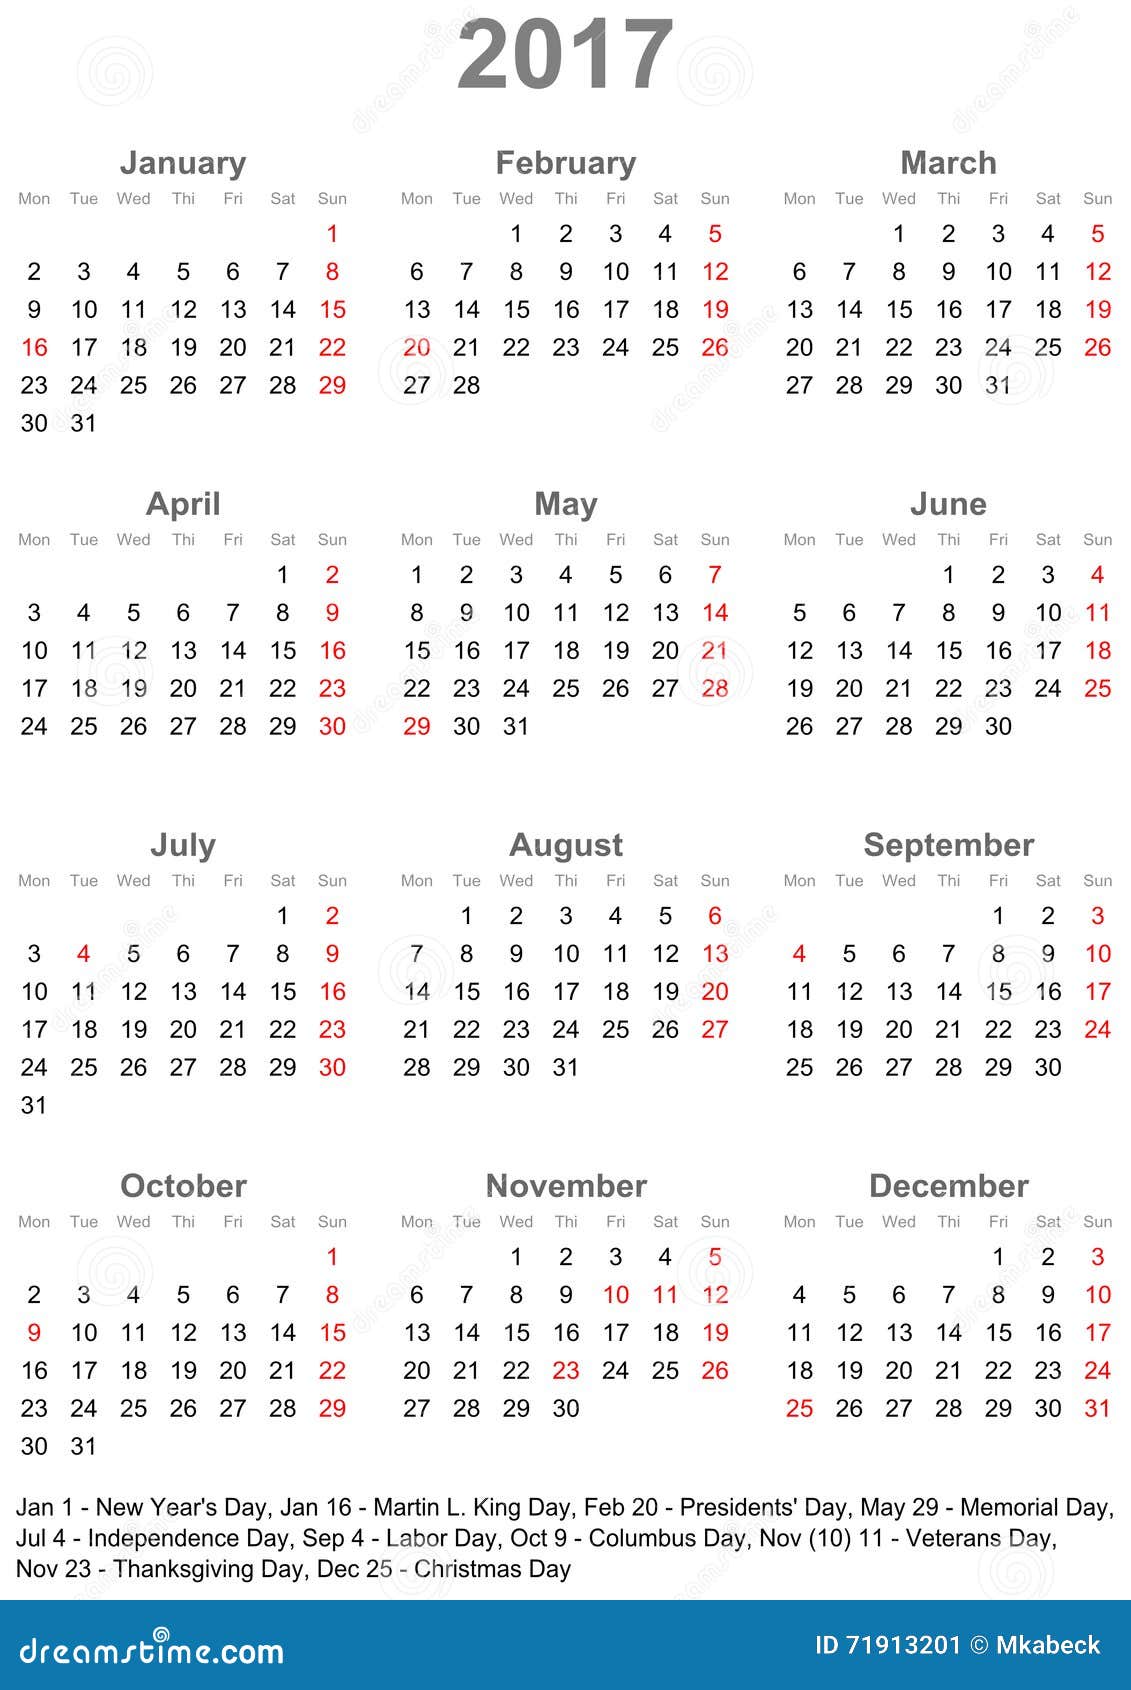 5 kalender 201 kalender 2015